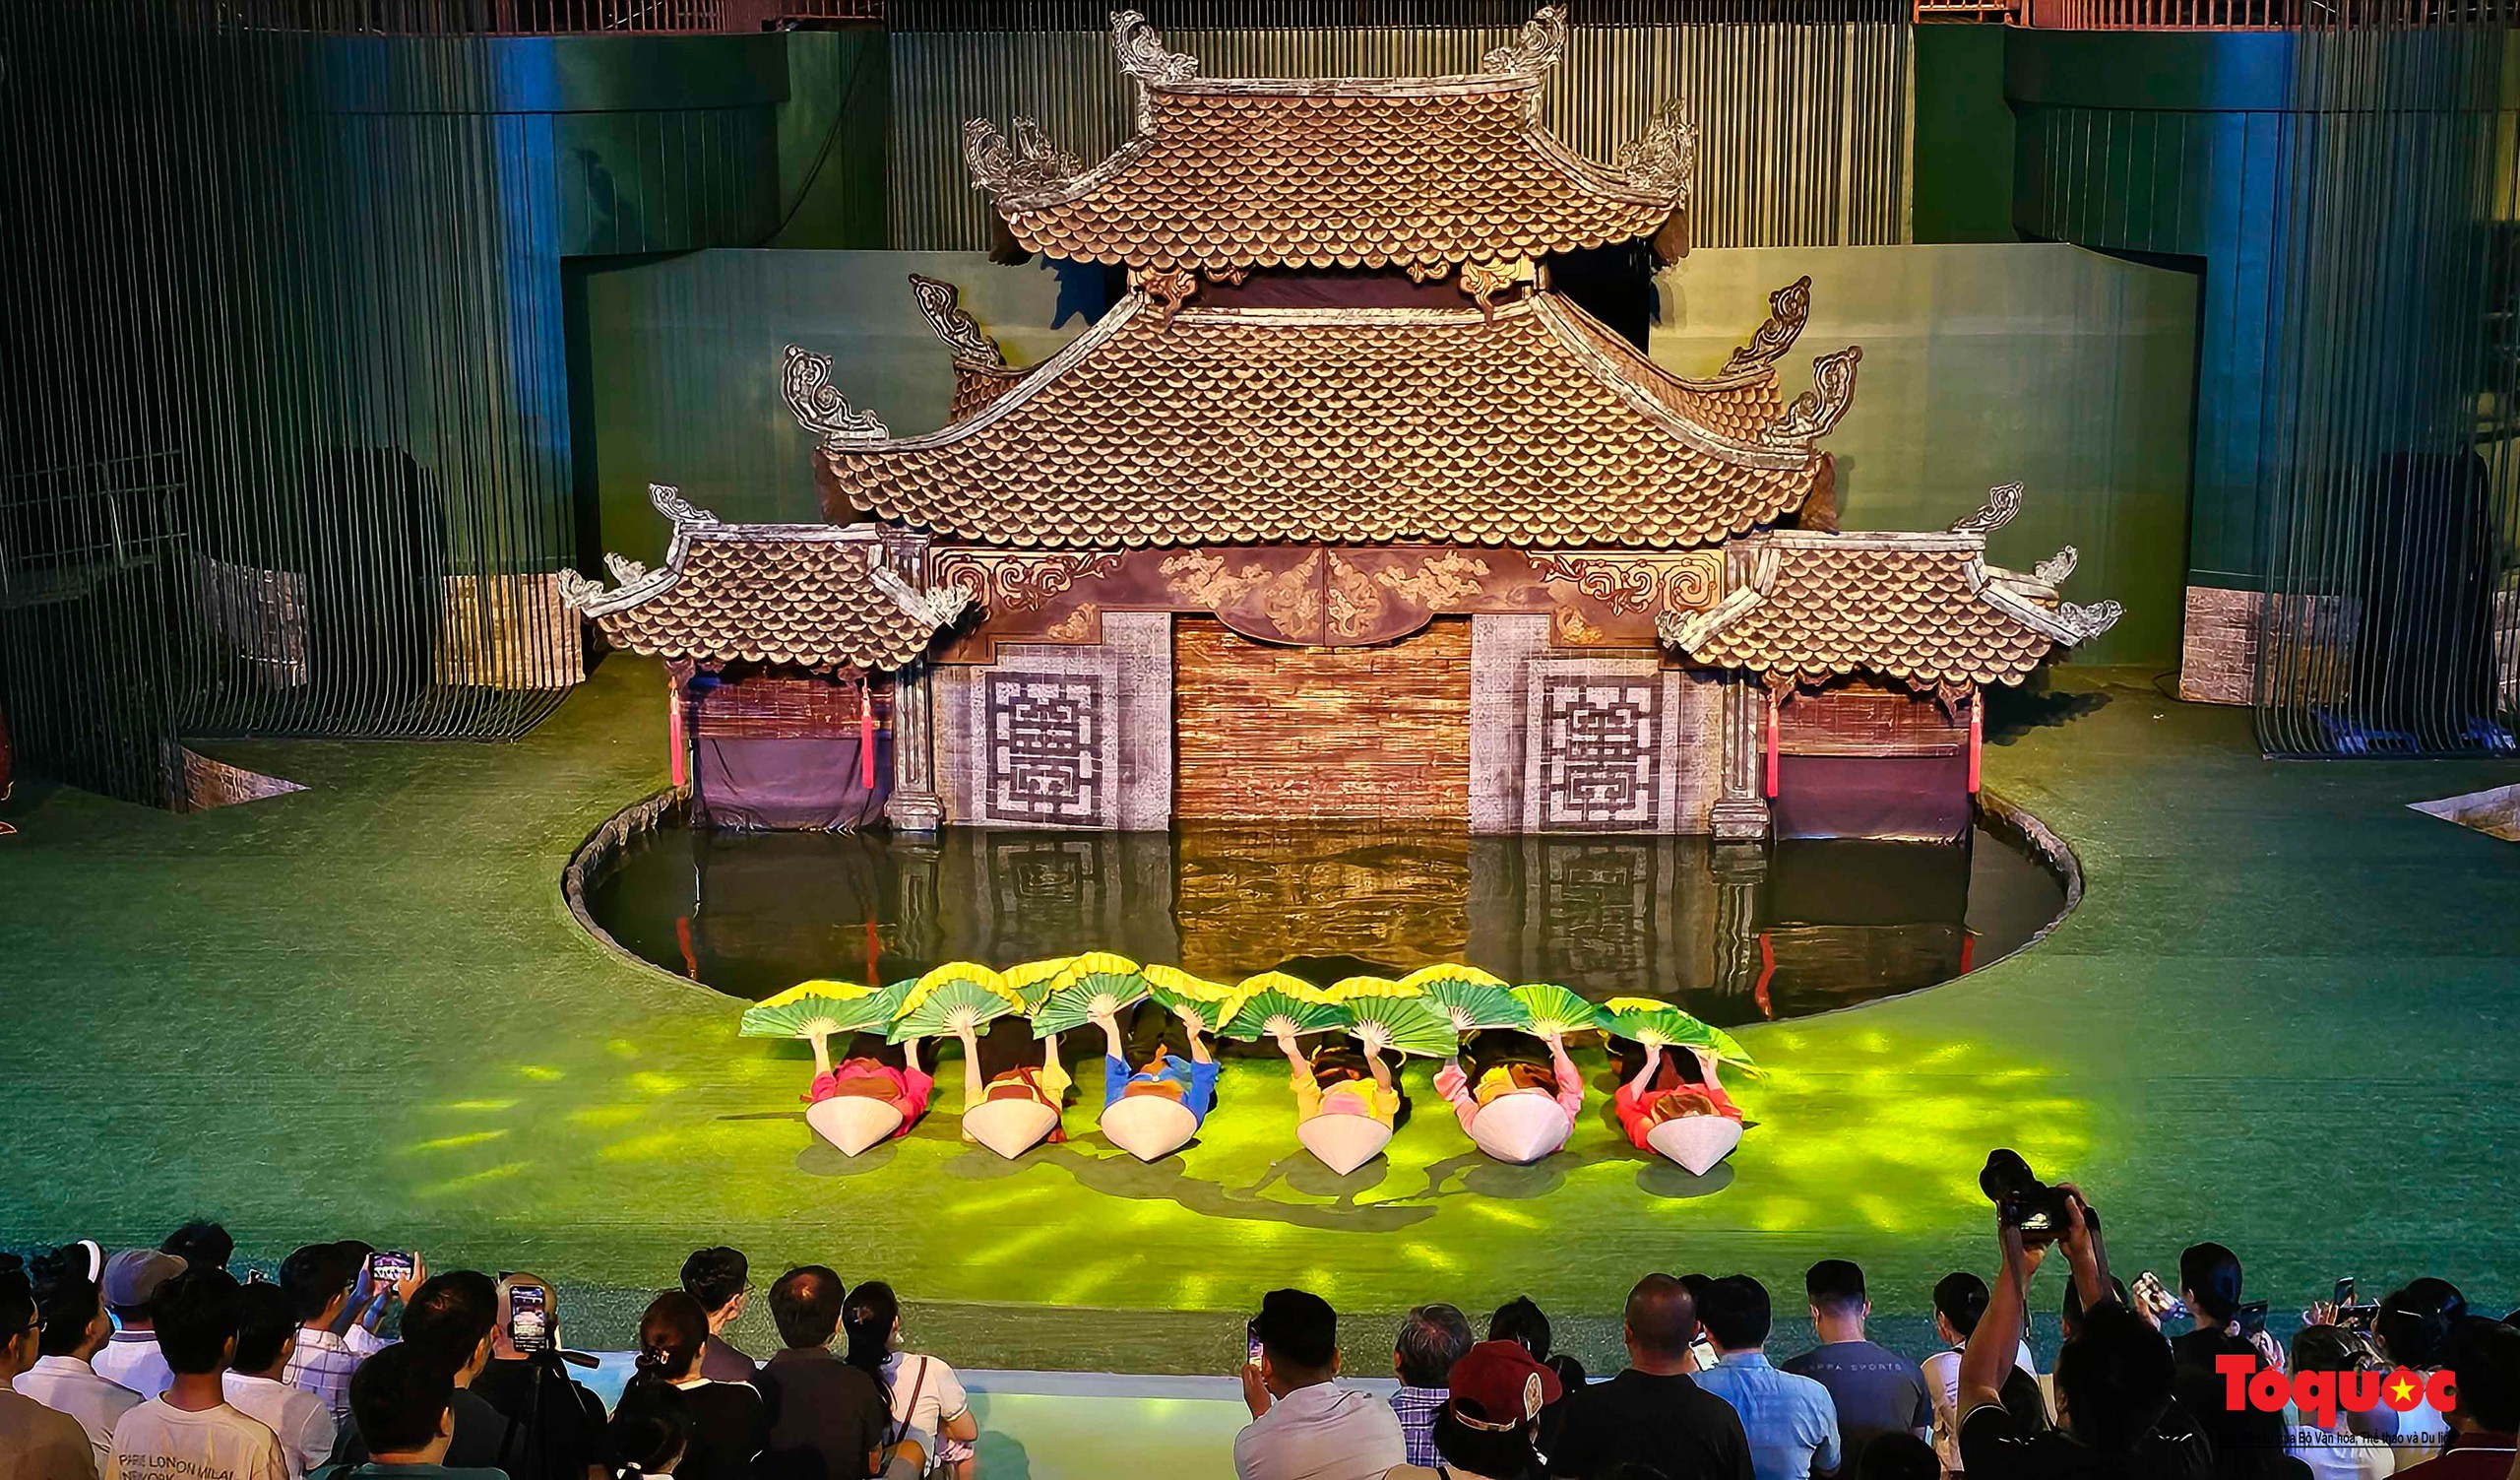 Du khách thích thú khám phá dòng chảy văn hóa Việt tại nhà hát múa rối lớn nhất miền Trung - Ảnh 9.